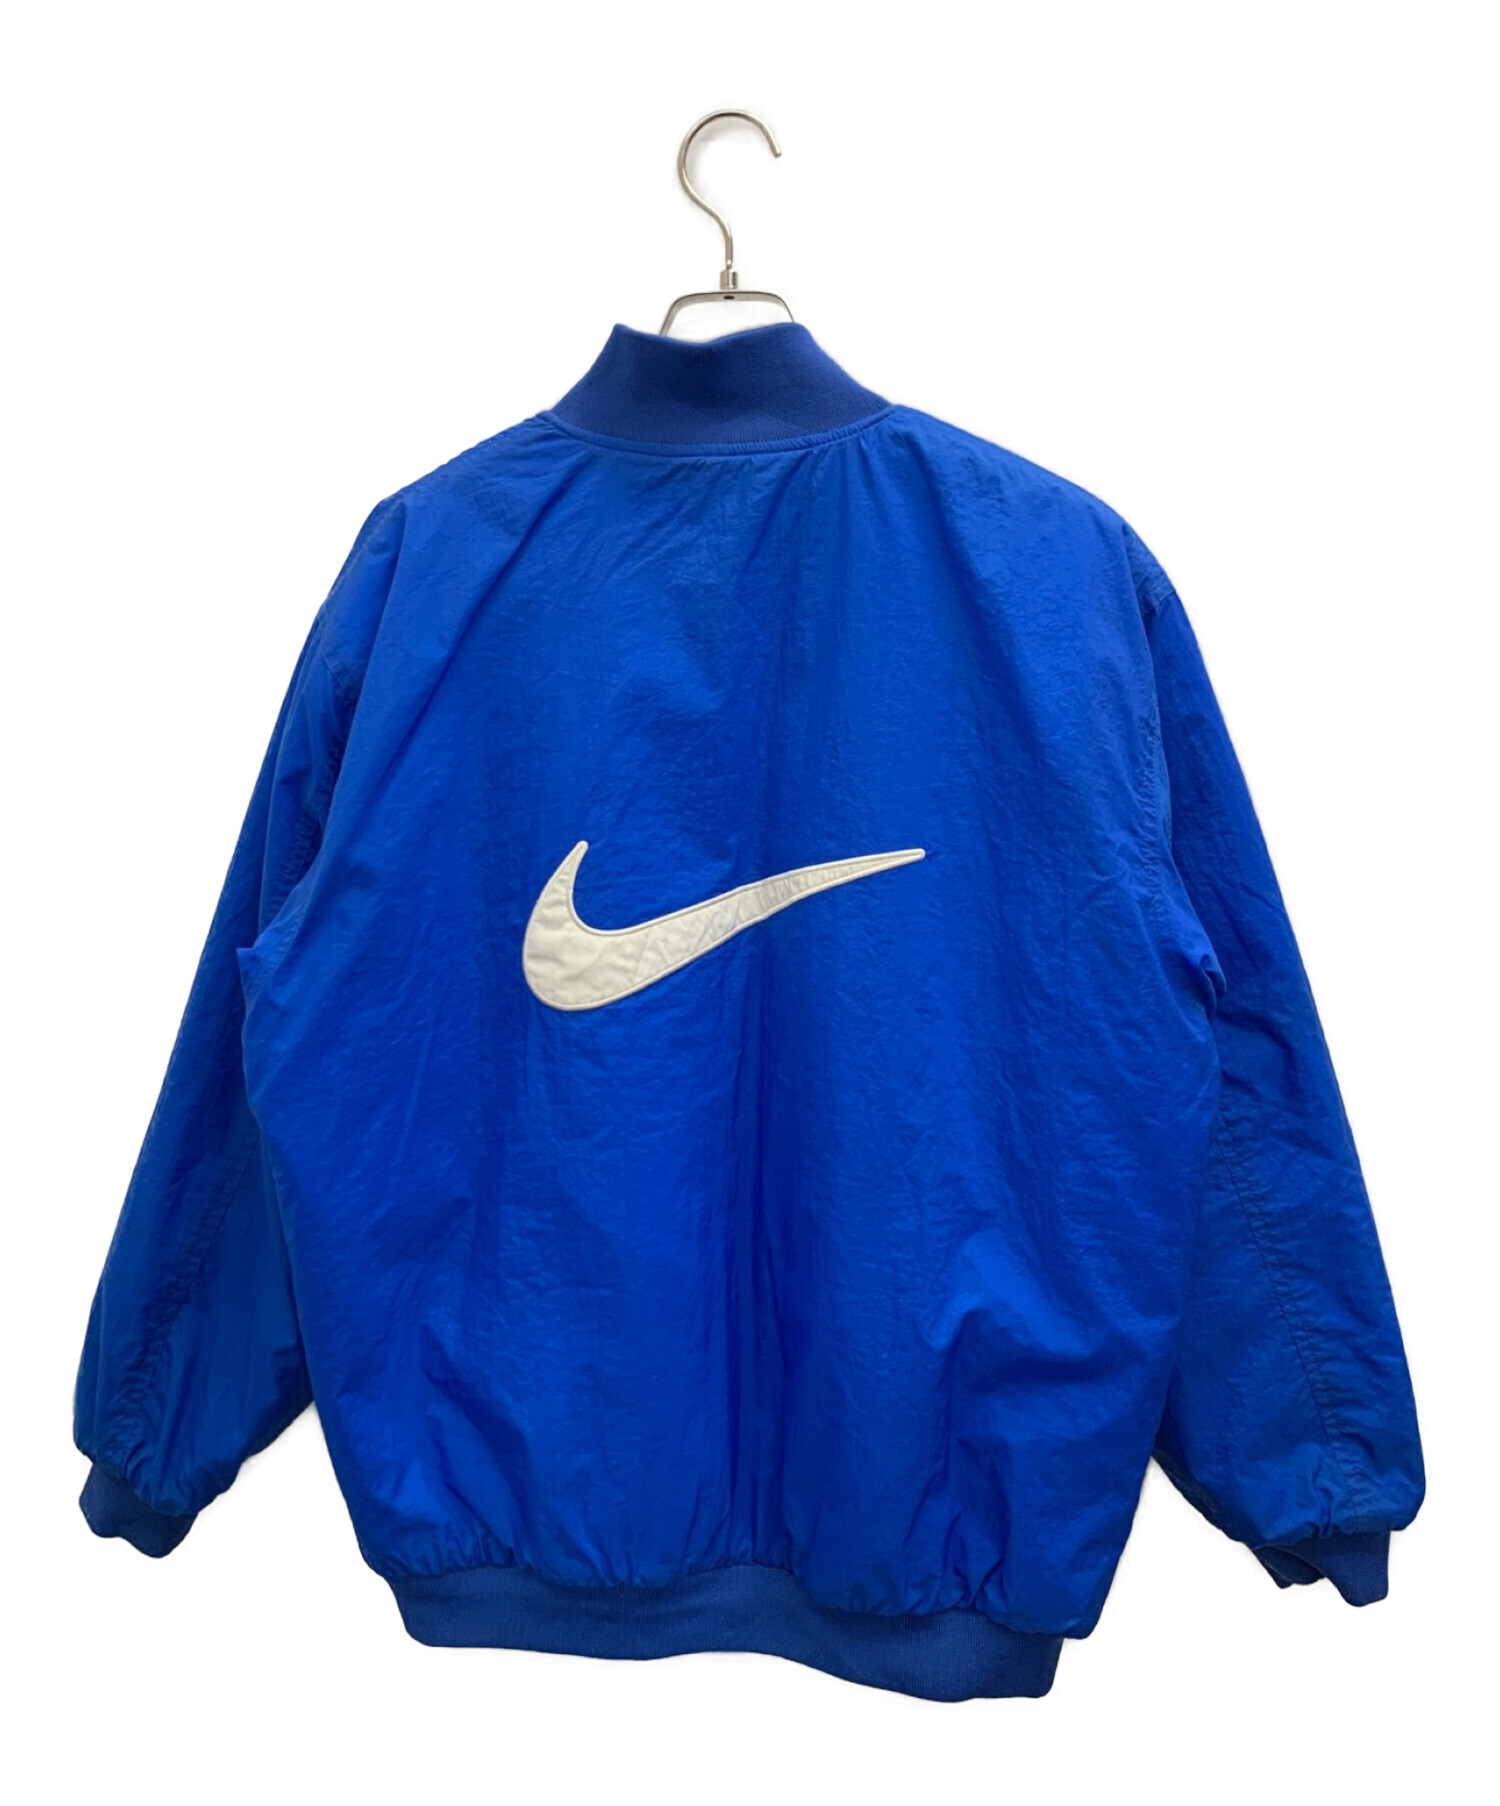 NIKE (ナイキ) 90sリバーシブルジャケット ブルー サイズ:L